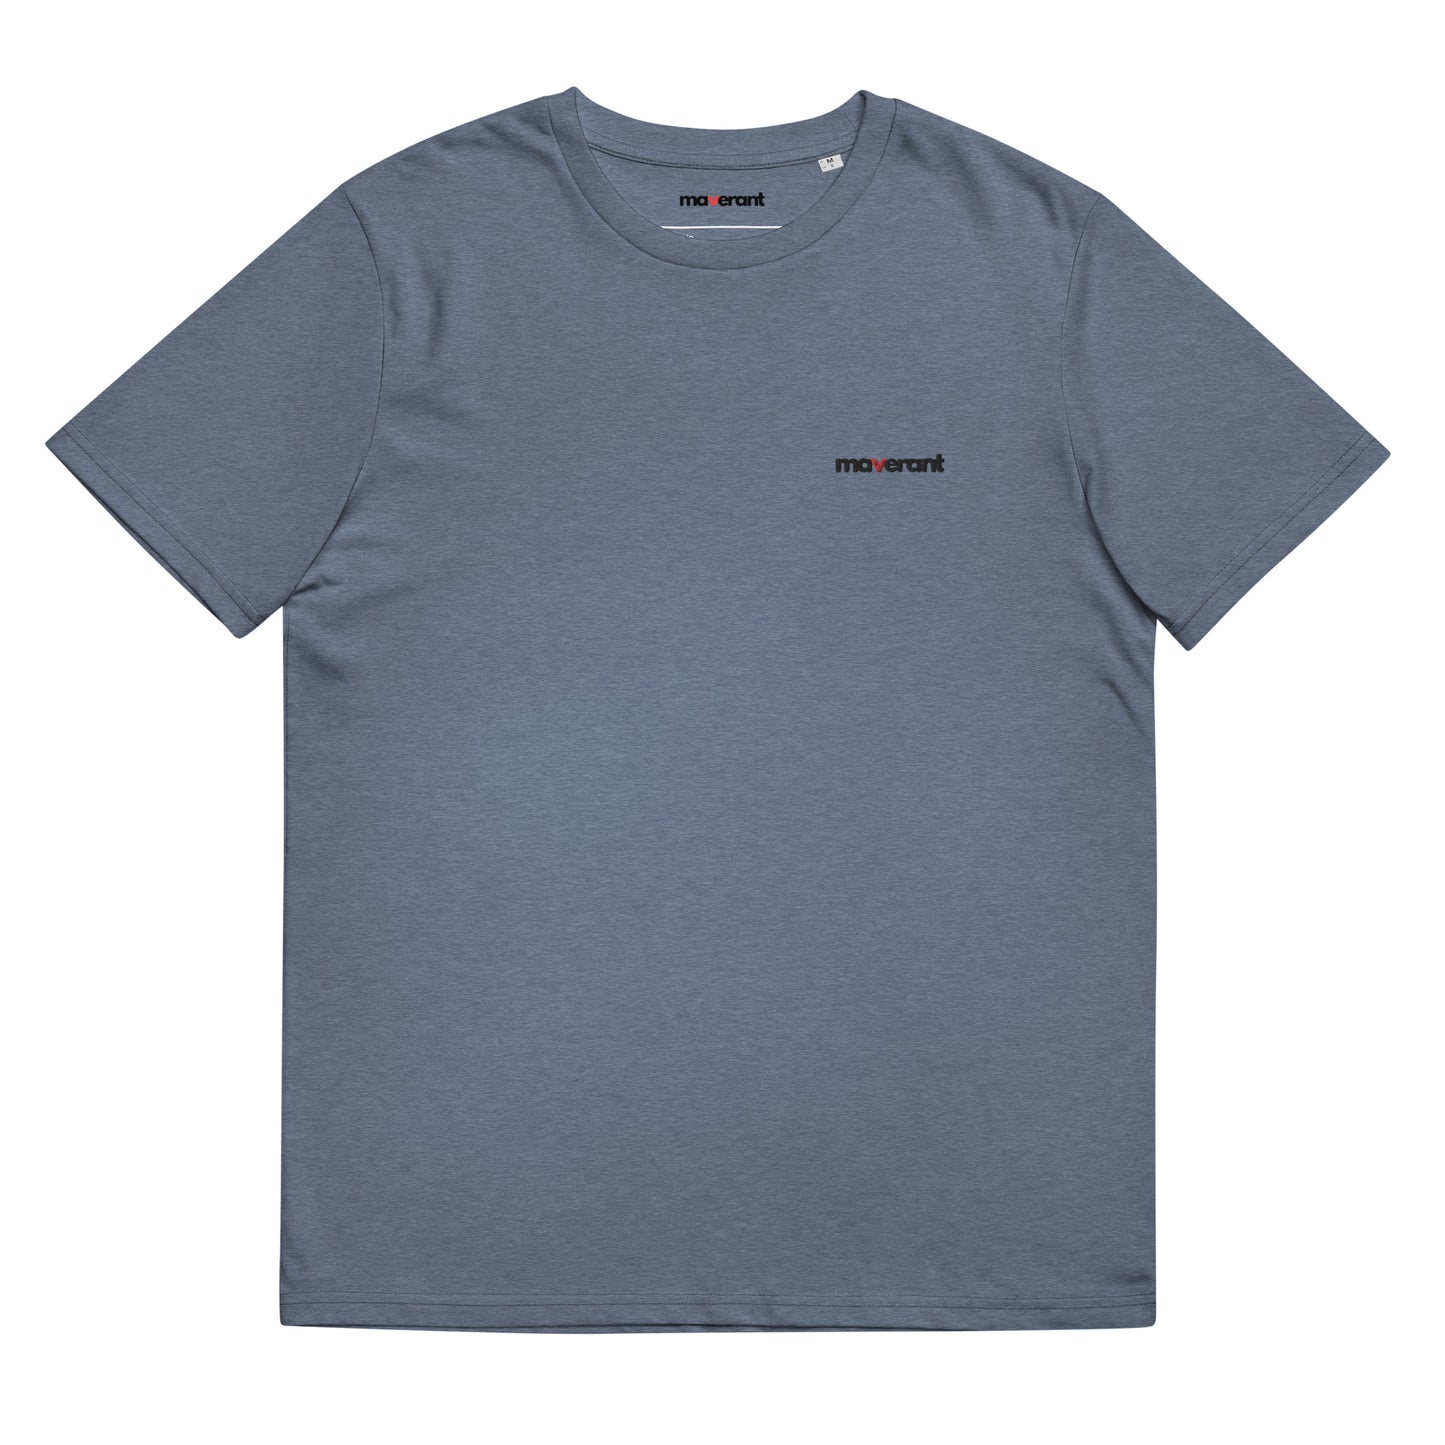 T-shirt in cotone organico unisex colore Dark Heather Blu con logo ricamato